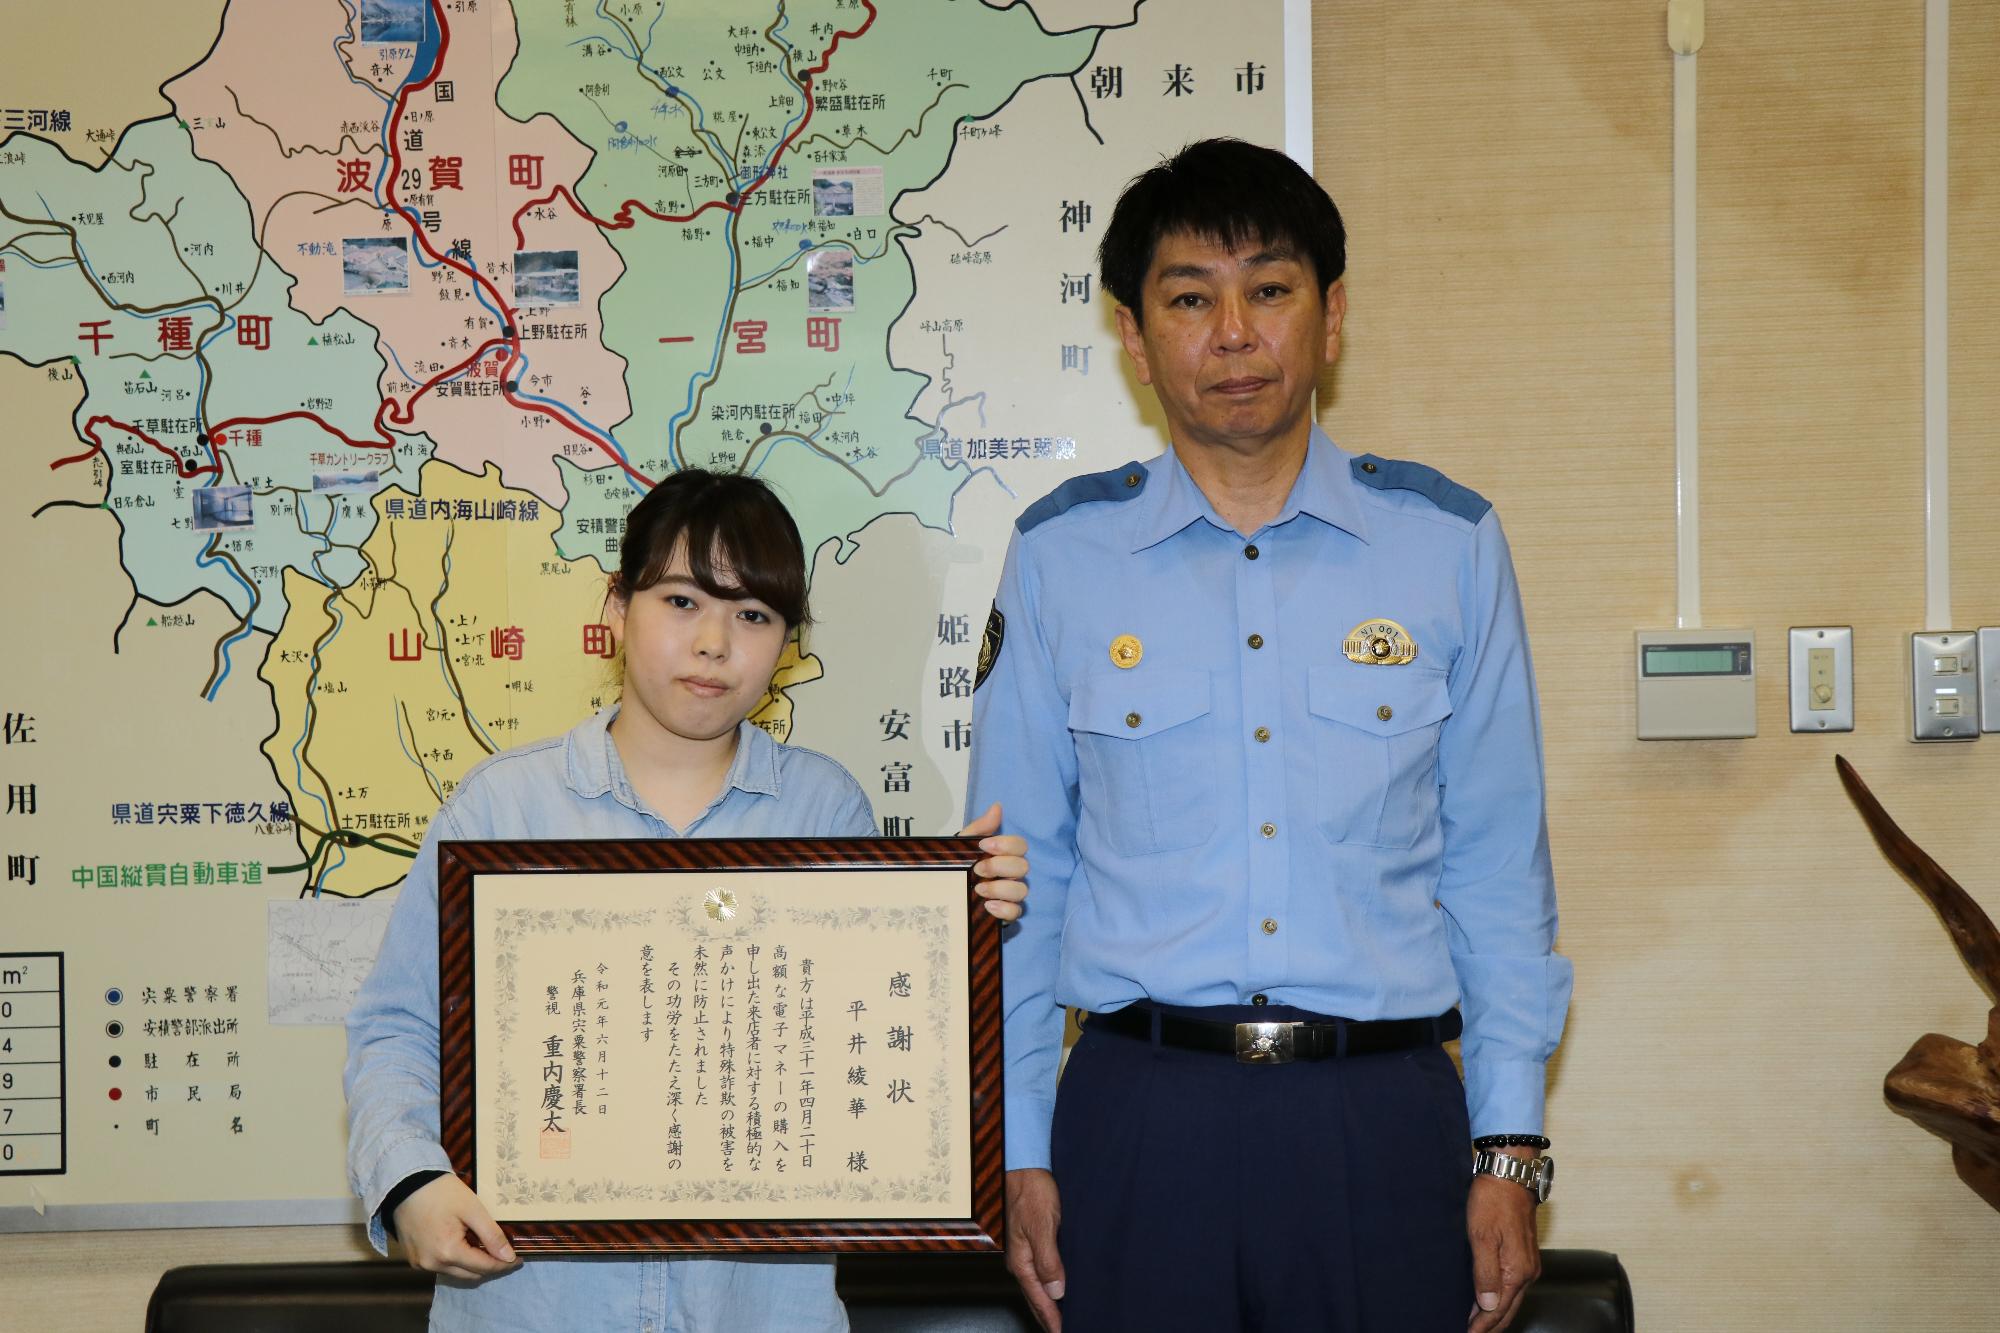 額縁に入った感謝状を持つ平井さんと宍粟市警察長の写真